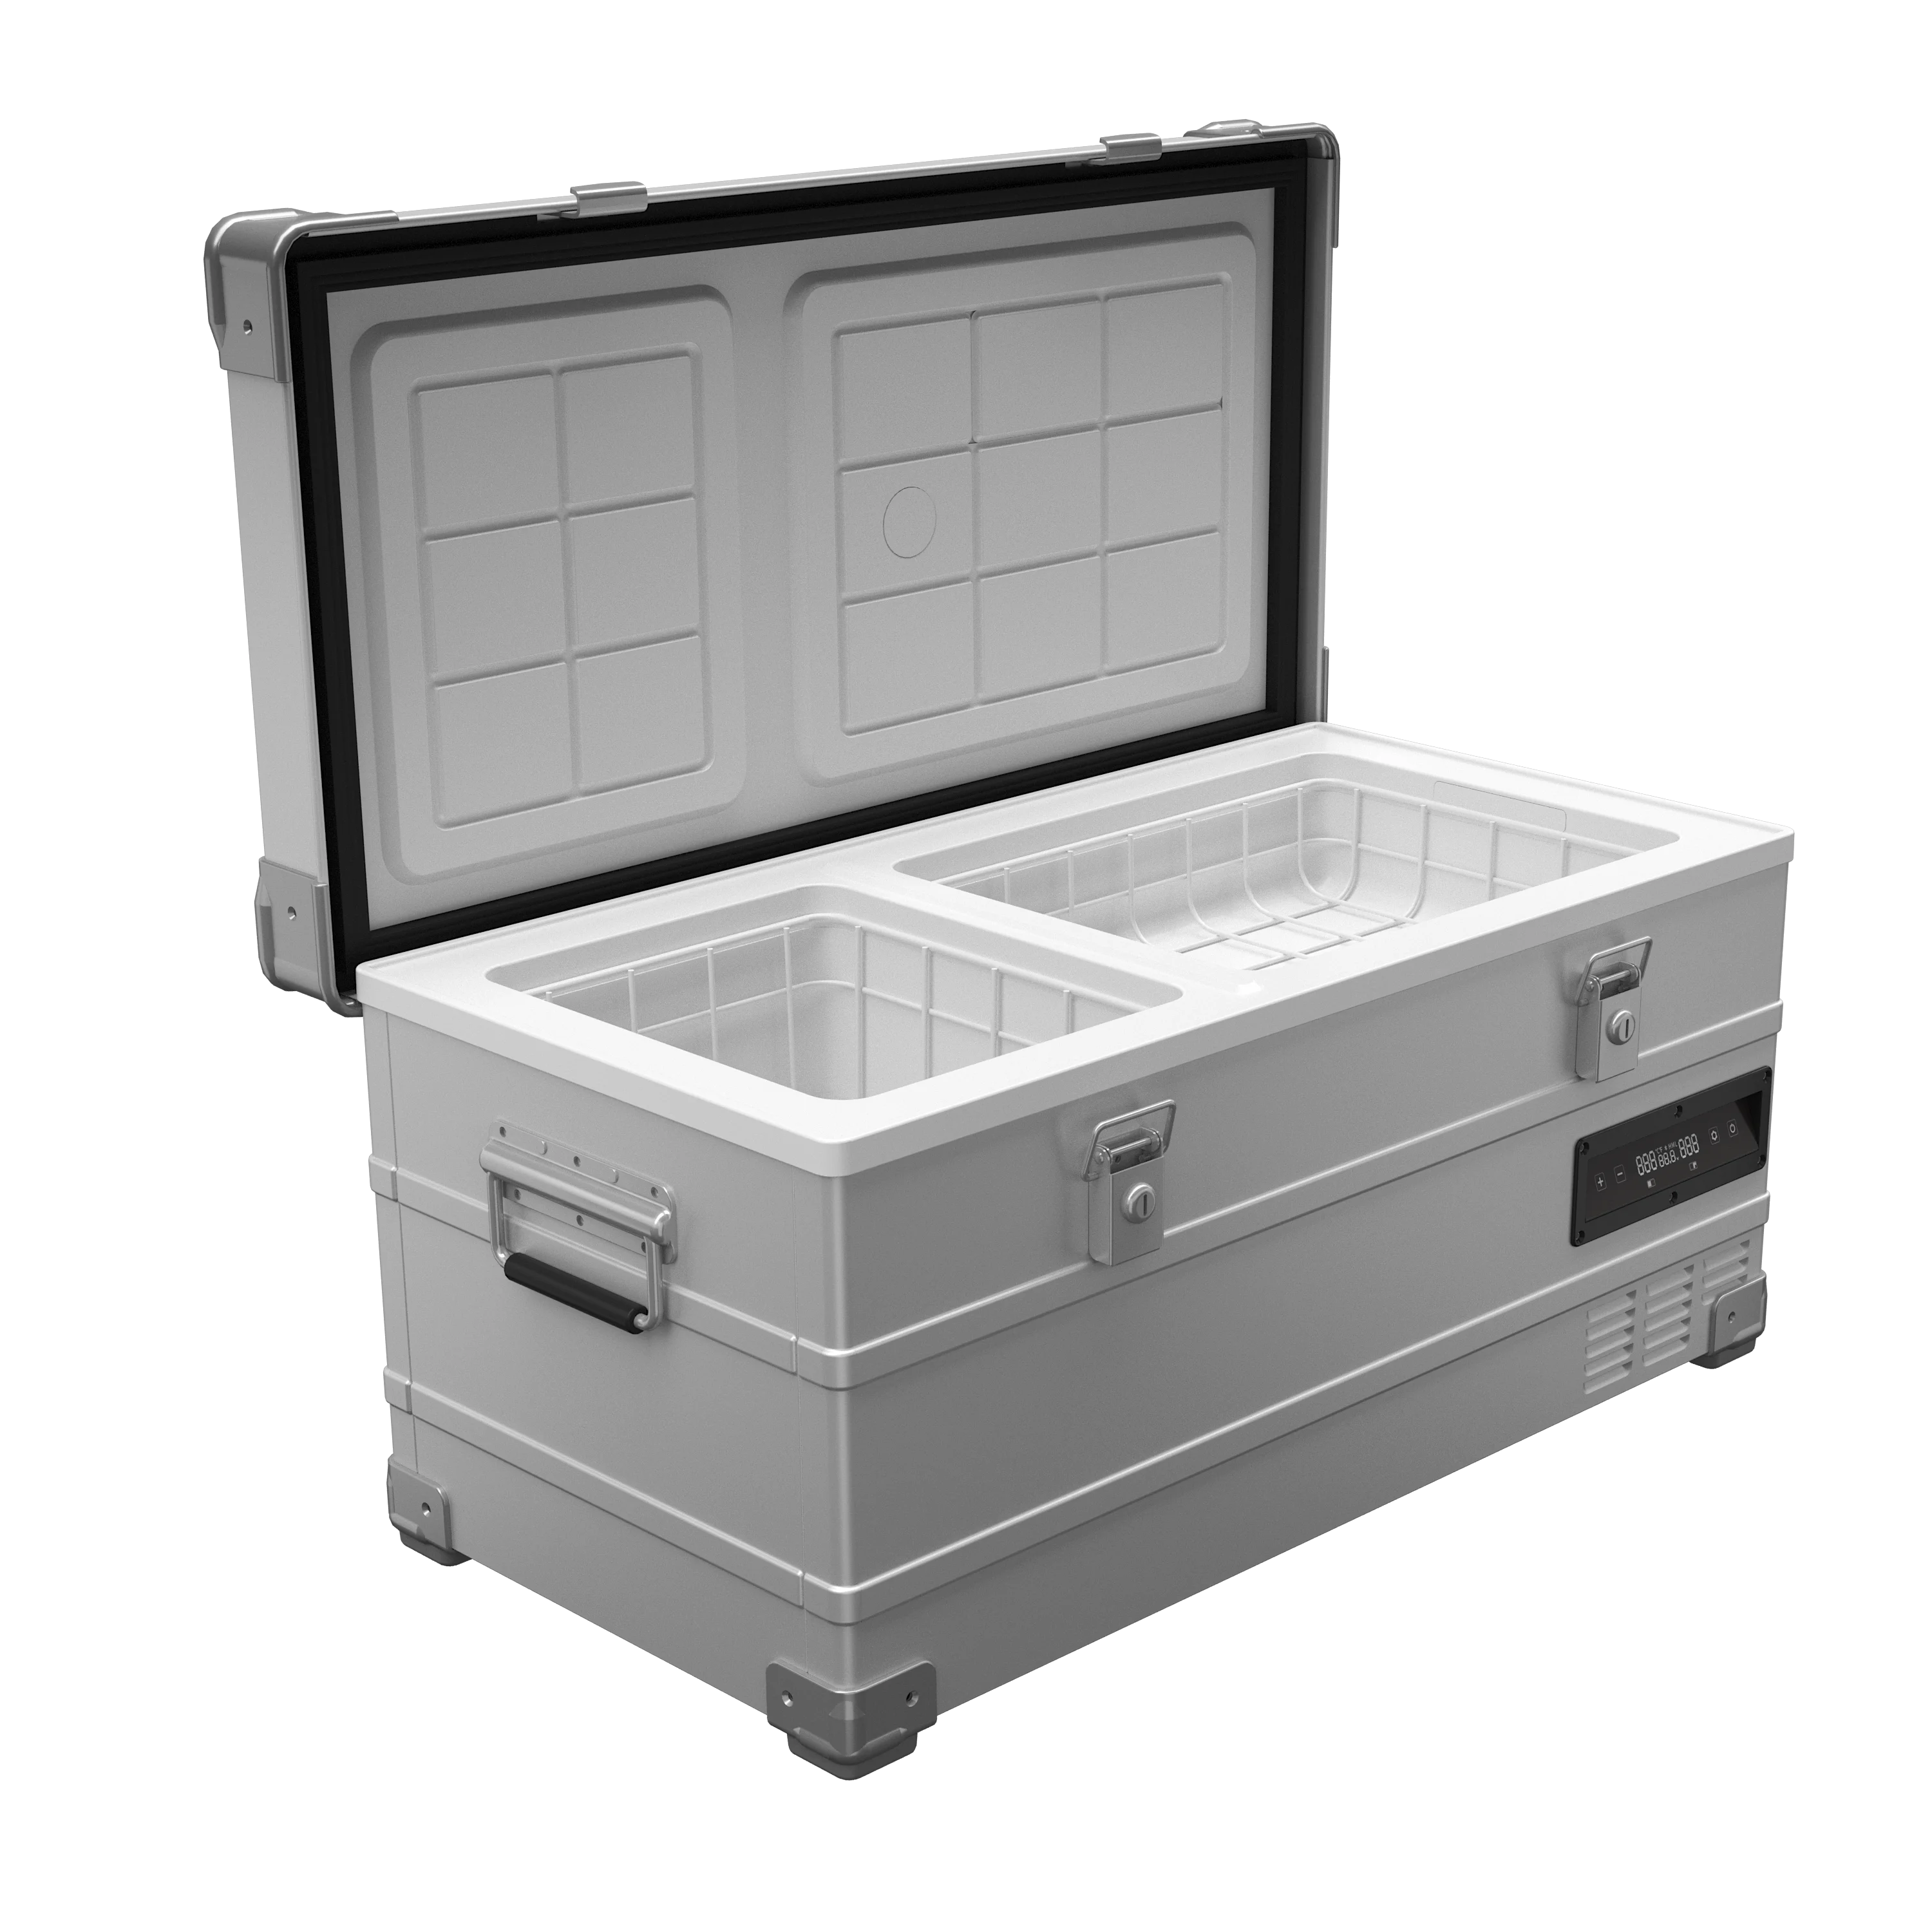 Car Refrigerator, Quart, 12V 110 V, Portable Freezer for Auto, RV, Truck, Camping, Travelling, Home, Compressor on m.alibaba.com